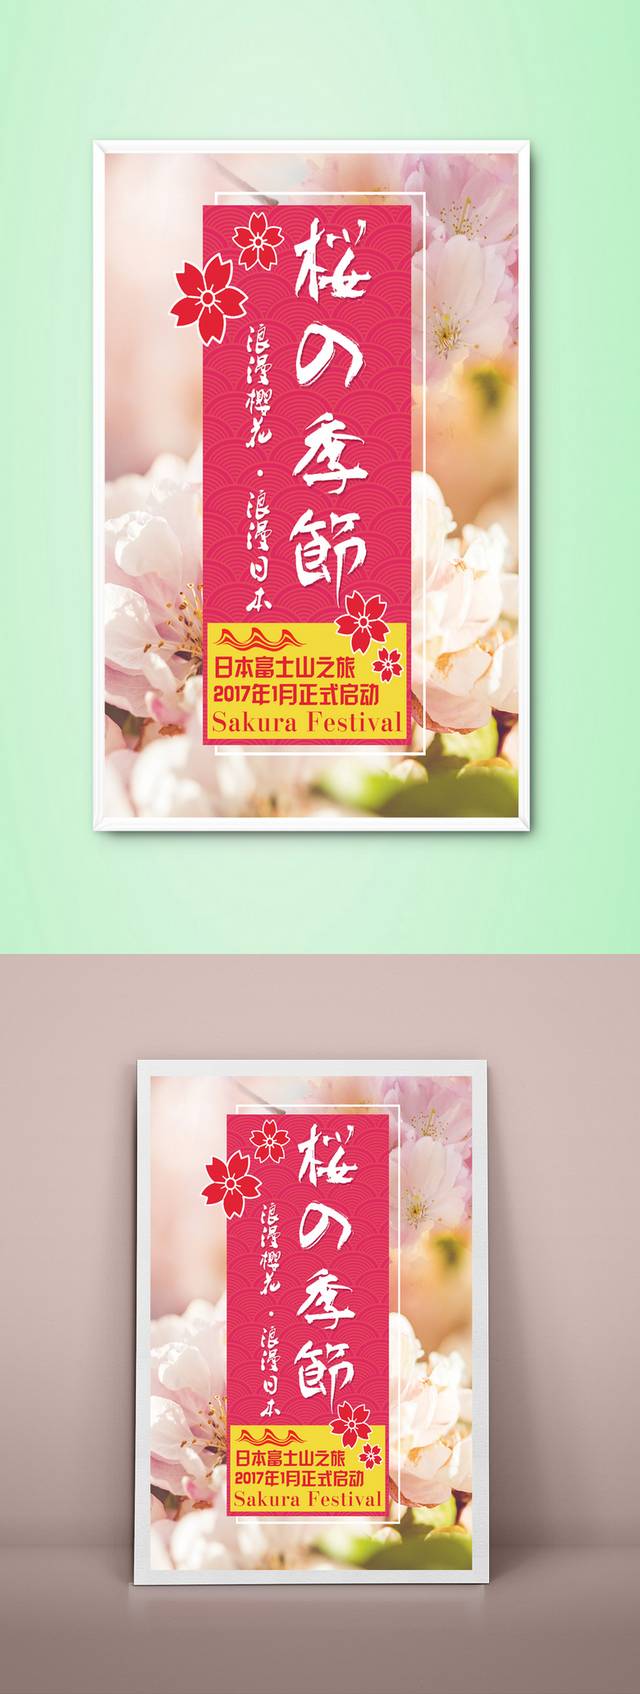 日本樱花旅游海报设计